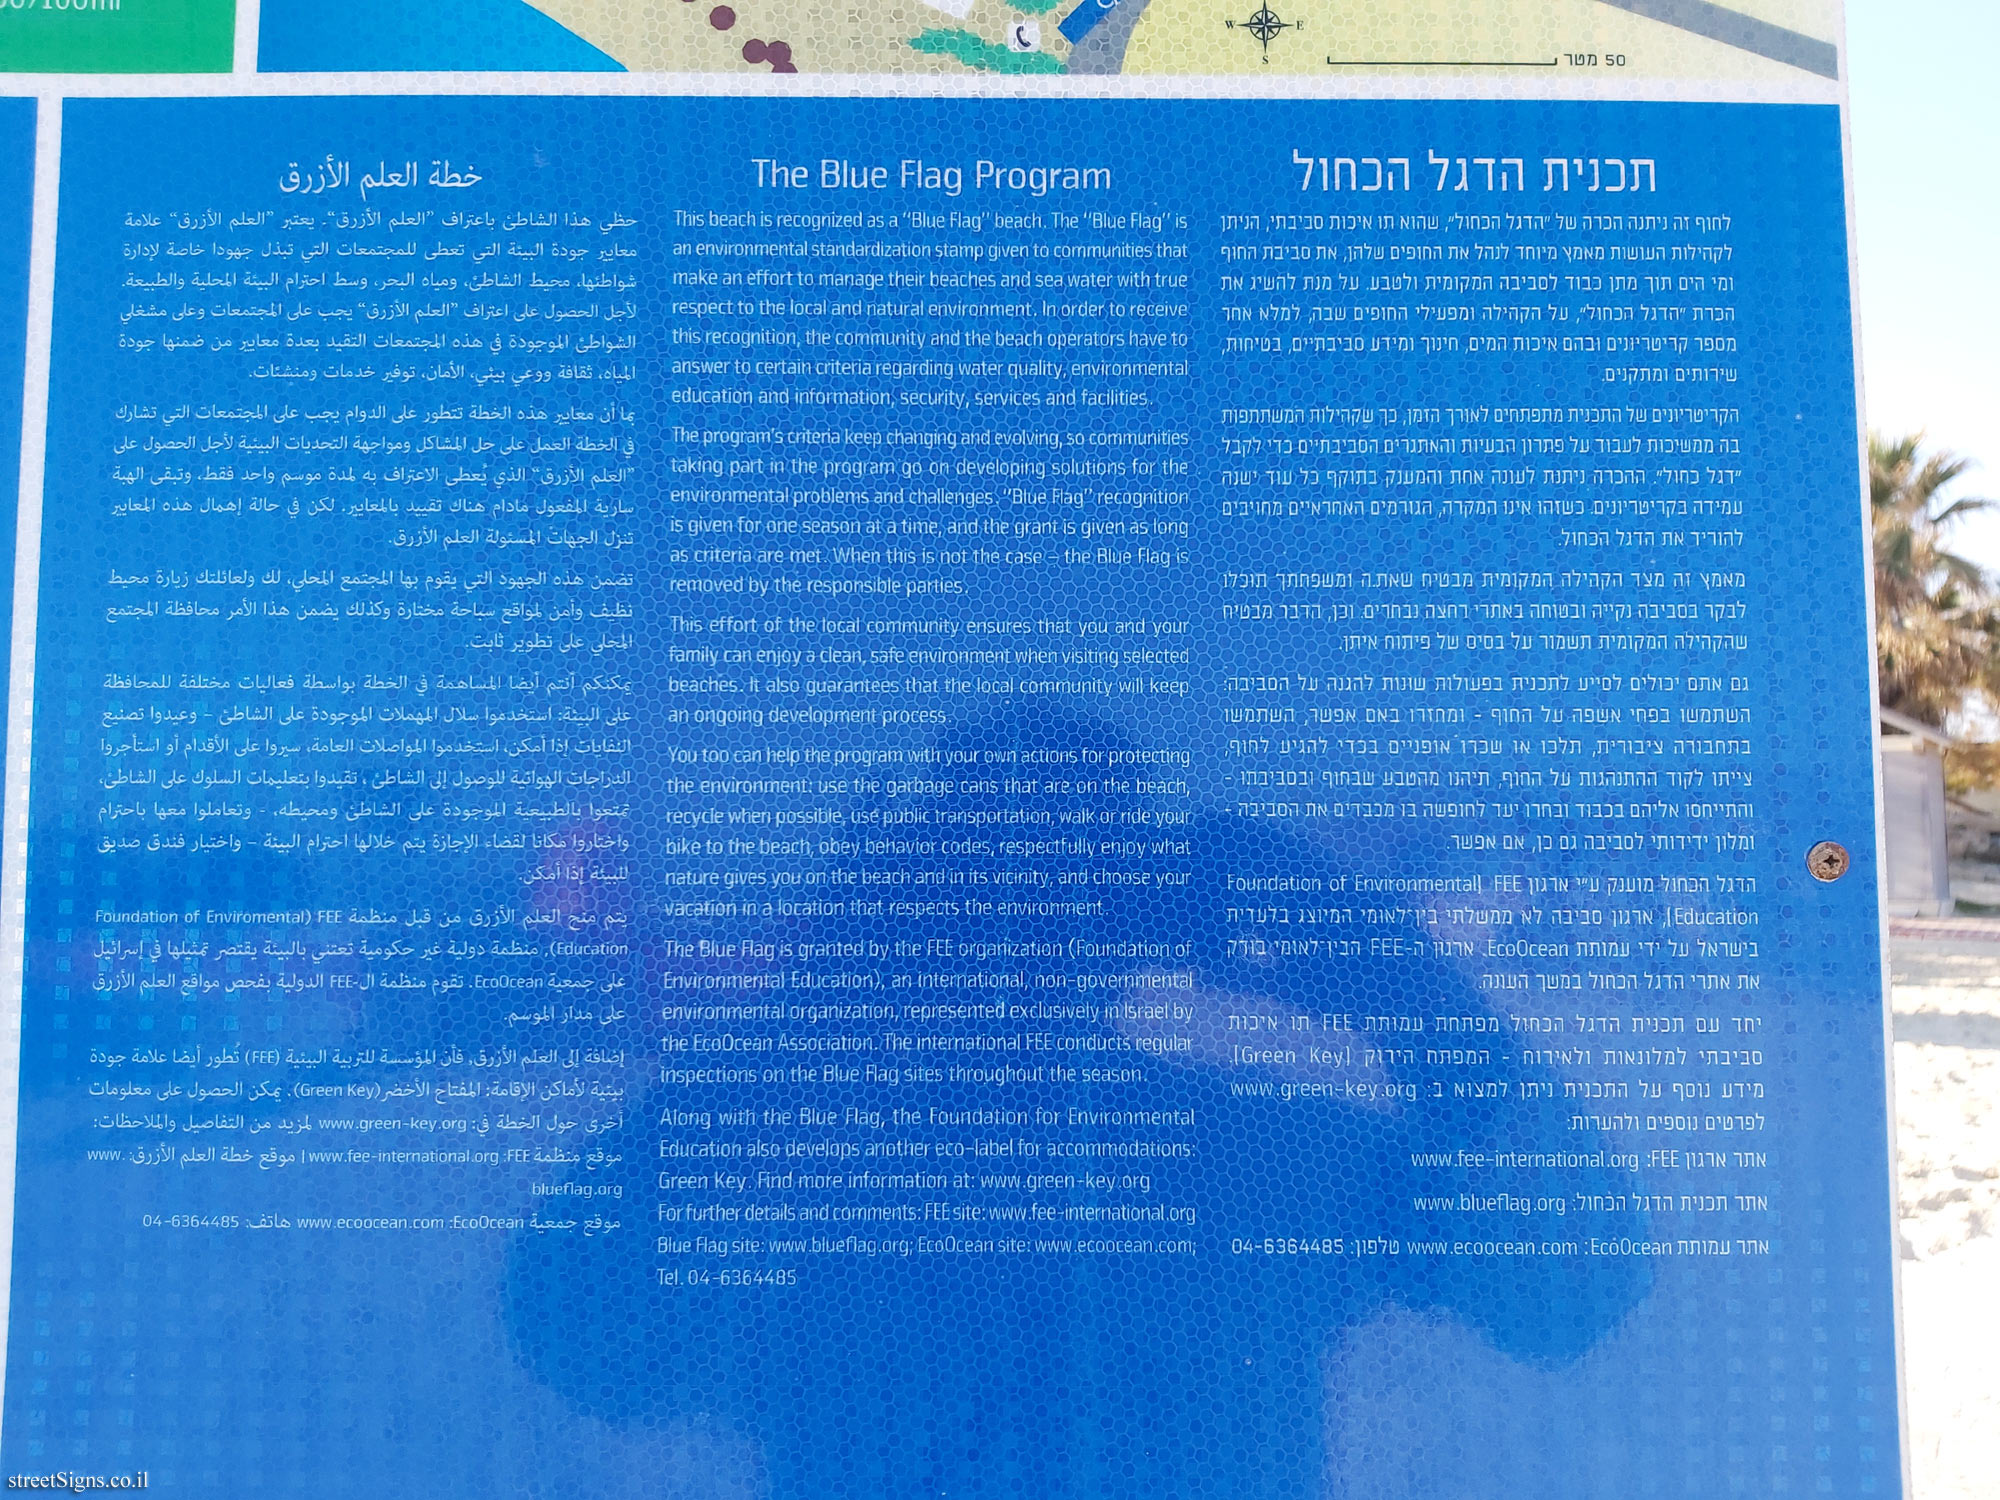 Tel Aviv - Blue Flag Beach - Metzitzim Beach - The Blue Flag Program